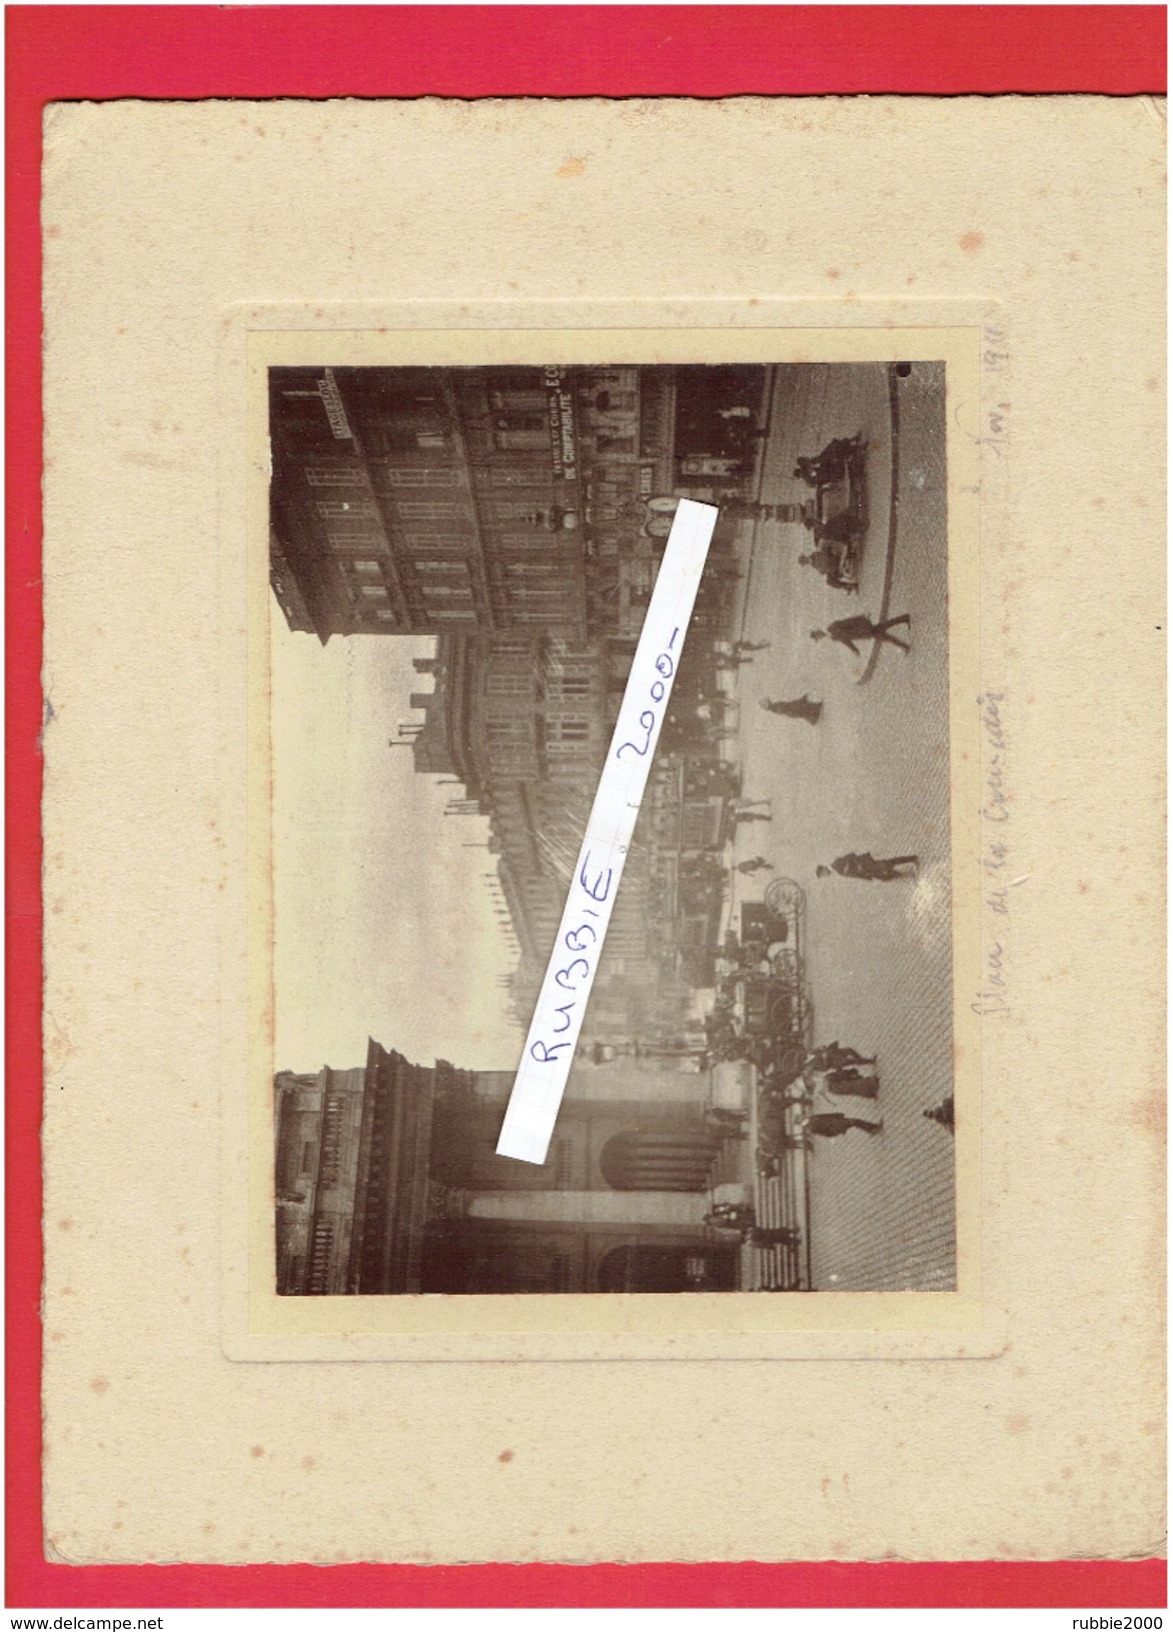 PHOTOGRAPHIE ARGENTIQUE DE BORDEAUX PLACE DE LA COMEDIE TRAMWAY EN NOVEMBRE 1911 - Lieux